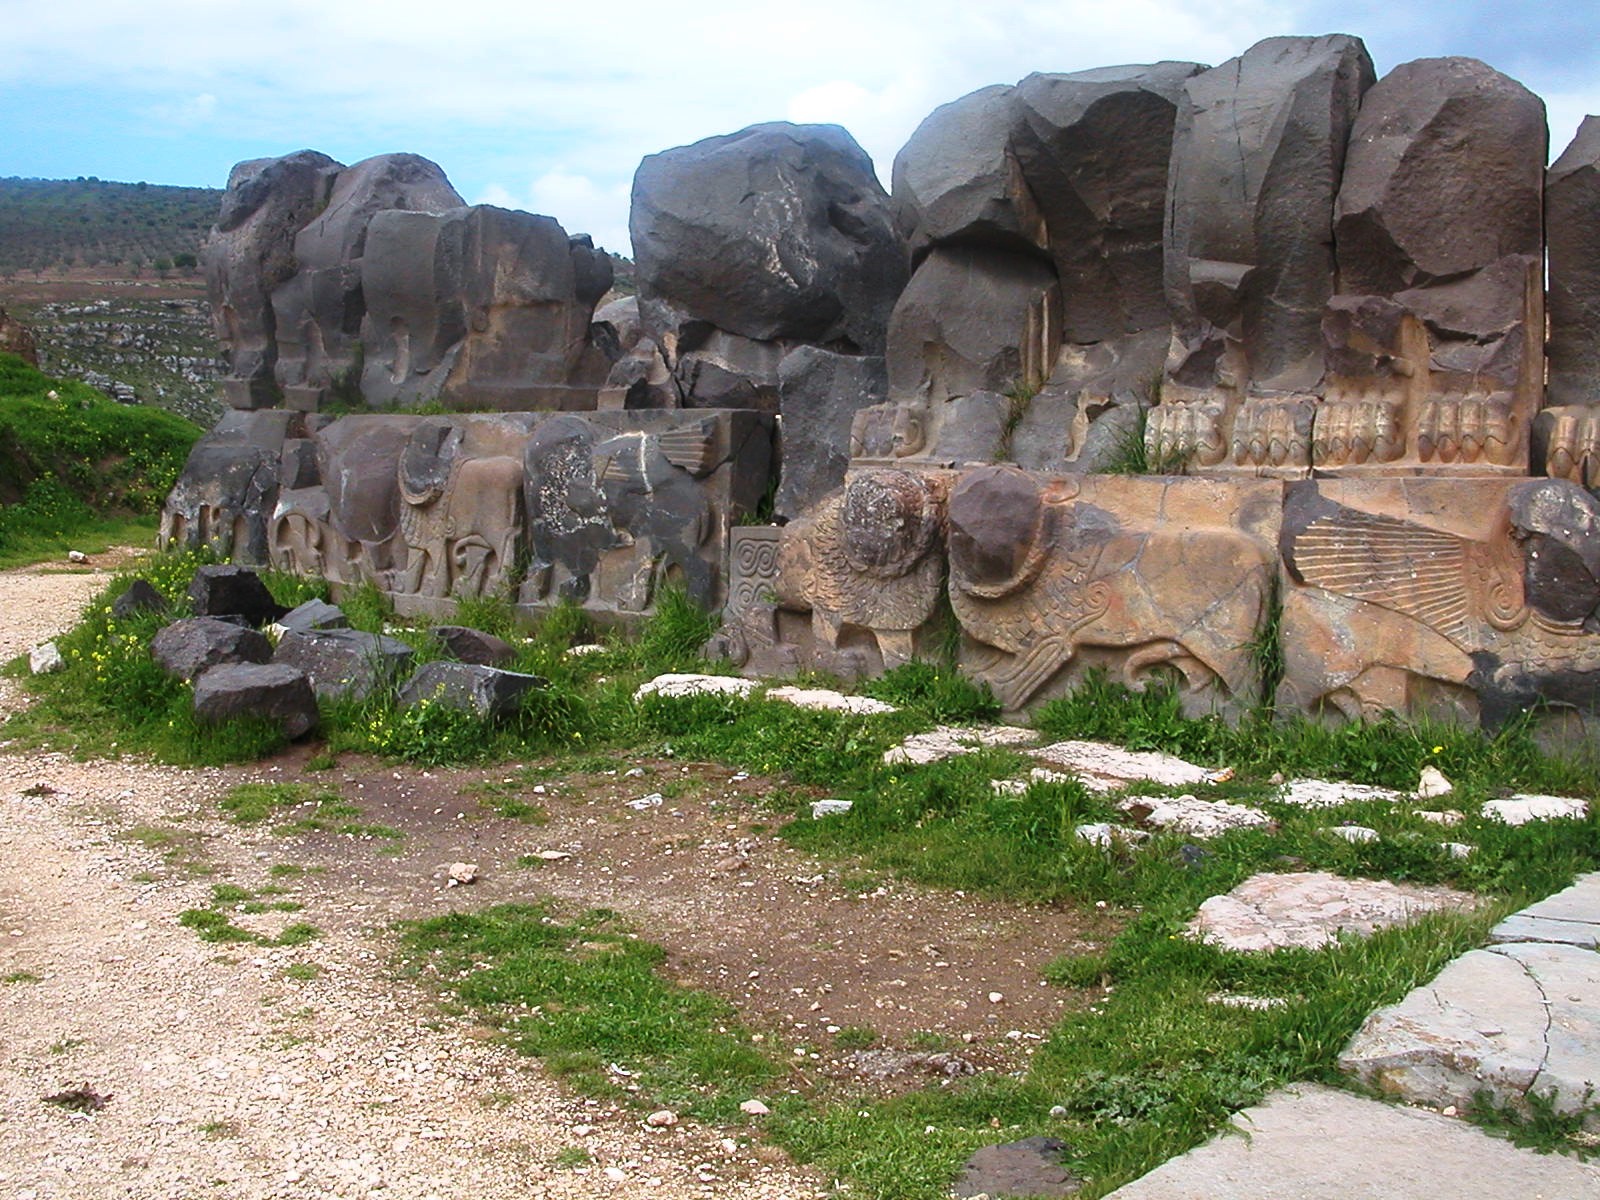 Turcos destroem monumento com 3000 anos